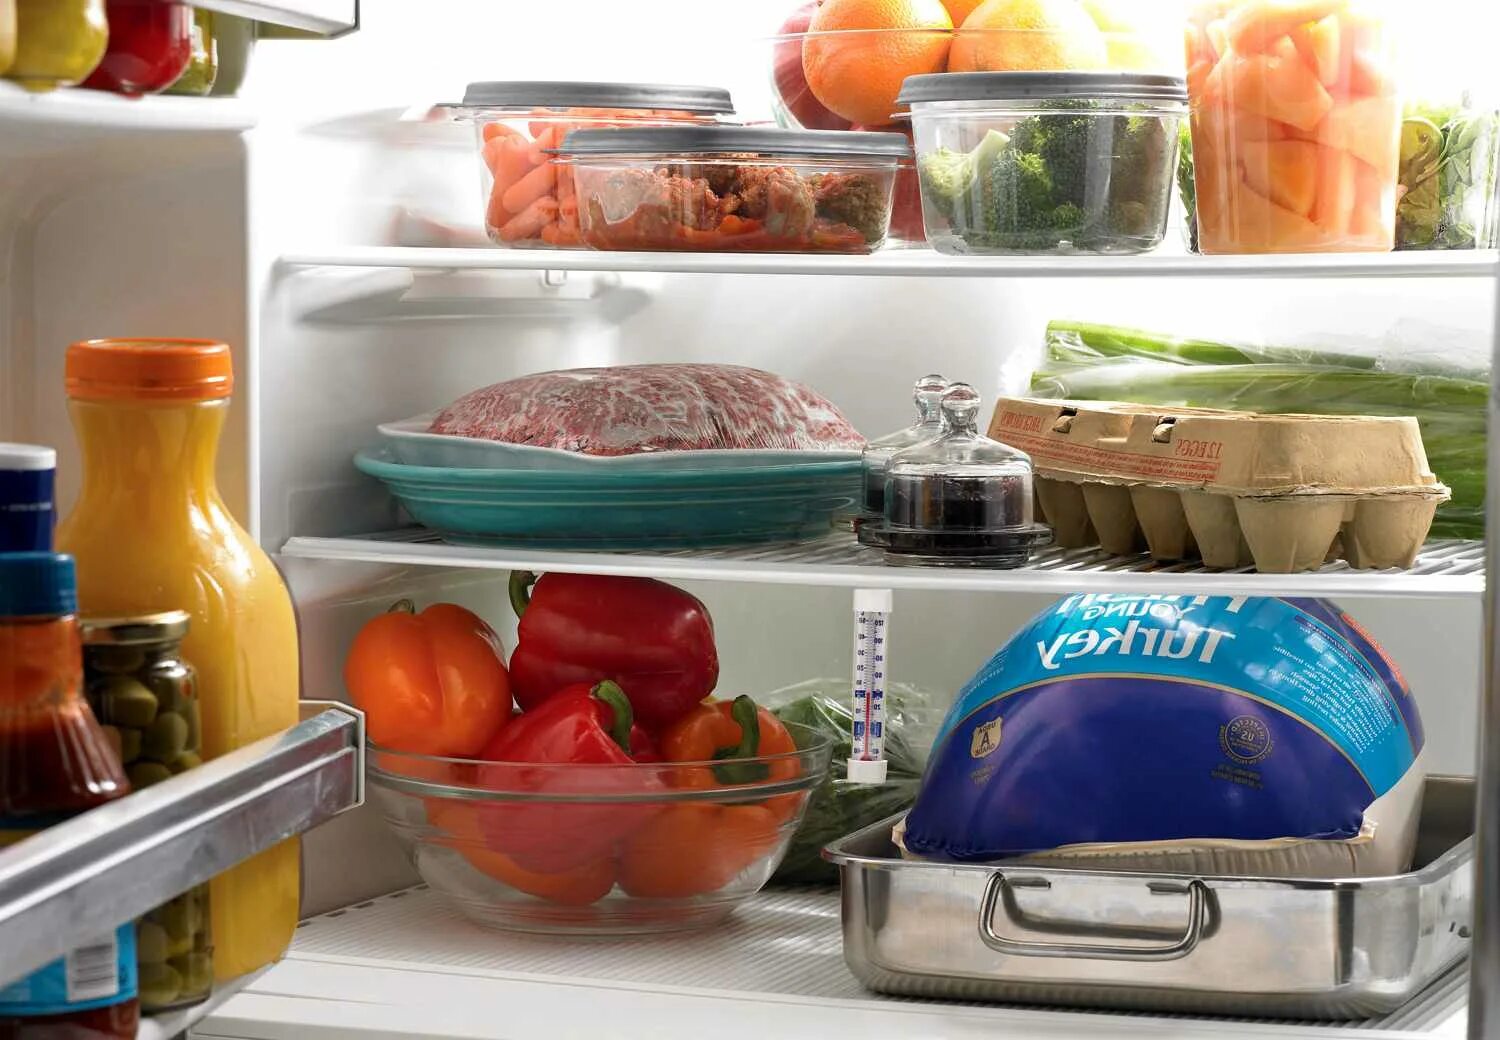 Производство и хранение продуктов. Холодильник с продуктами. Хранение продуктов в холодильнике. Проддуктыв холодильнике. Правильное хранение еды в холодильнике.